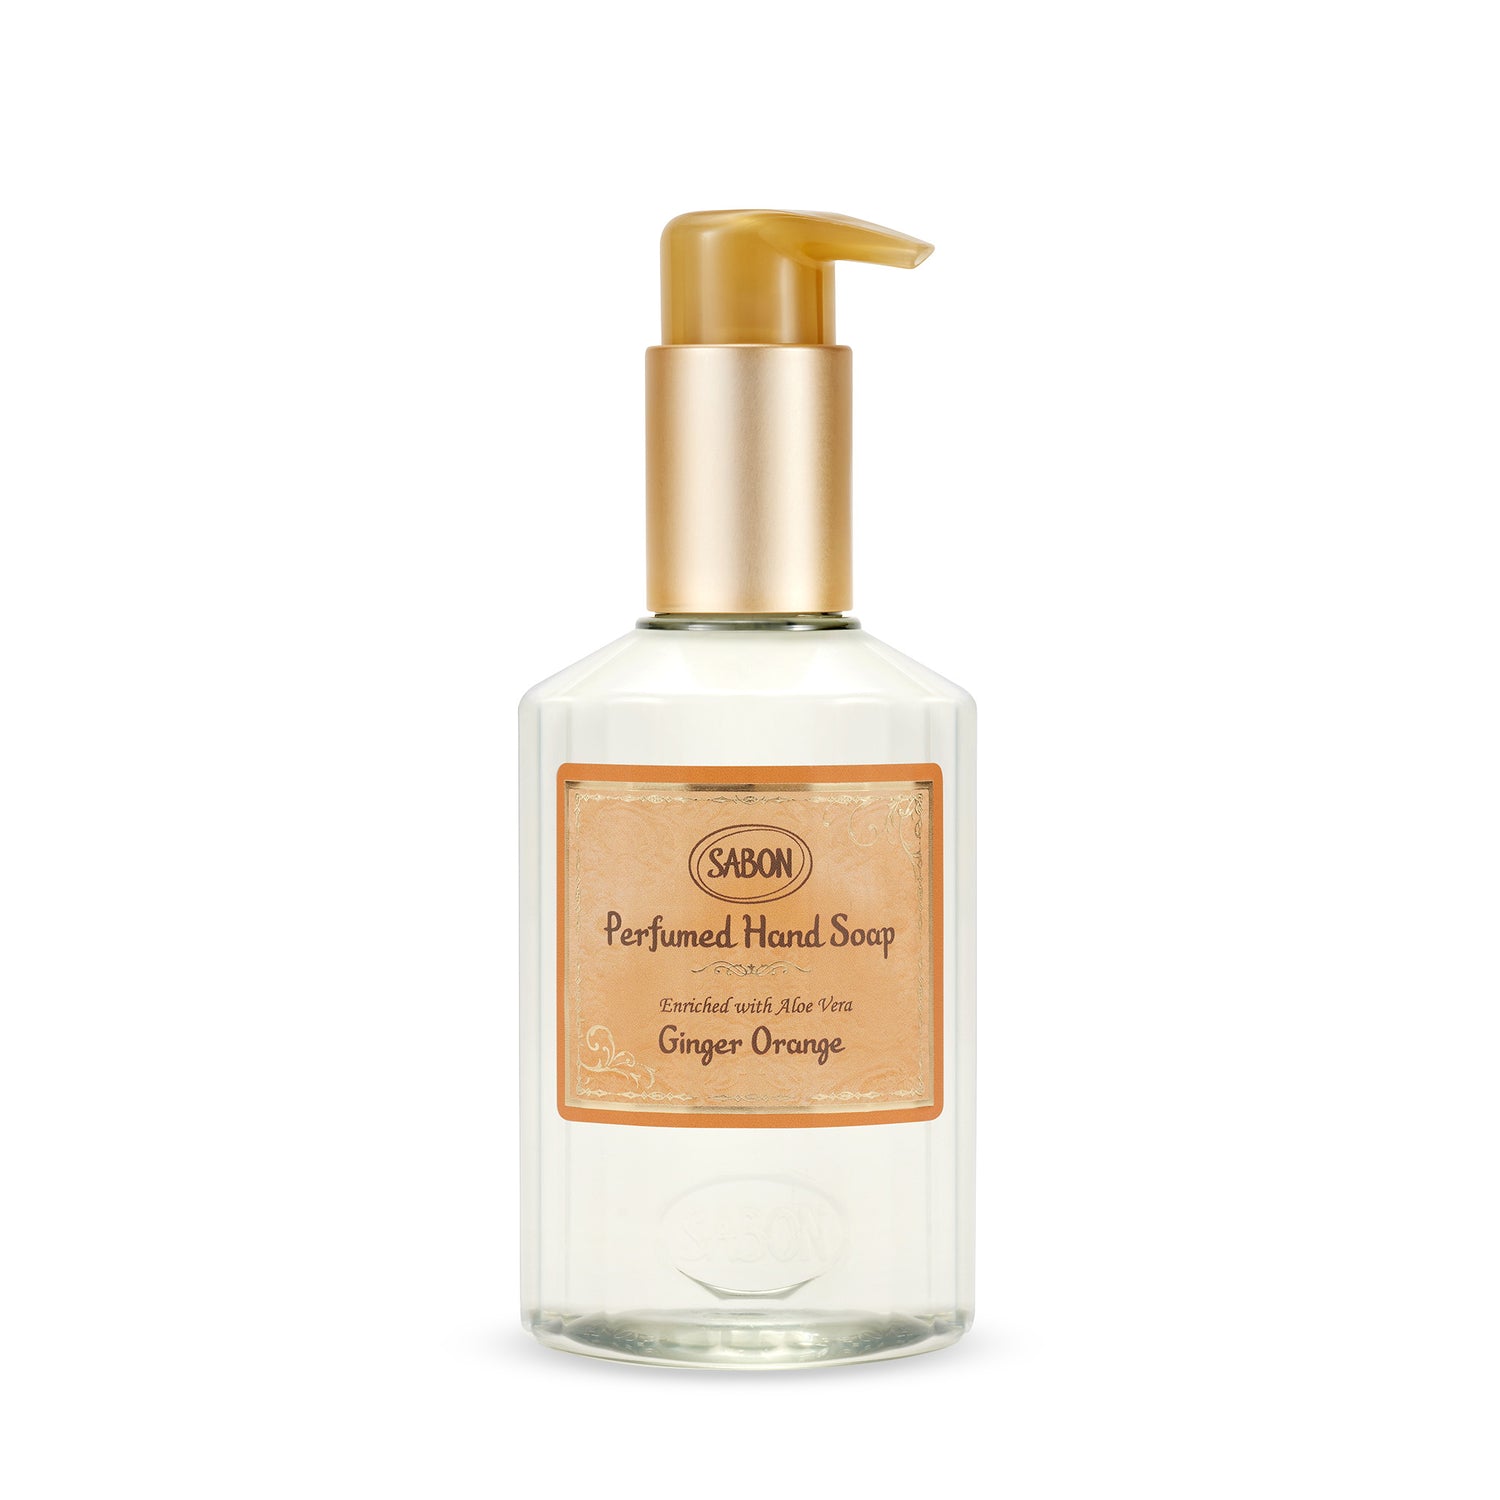 SABON Ginger Orange Perfumed Hand Soap Bottle (200ml)